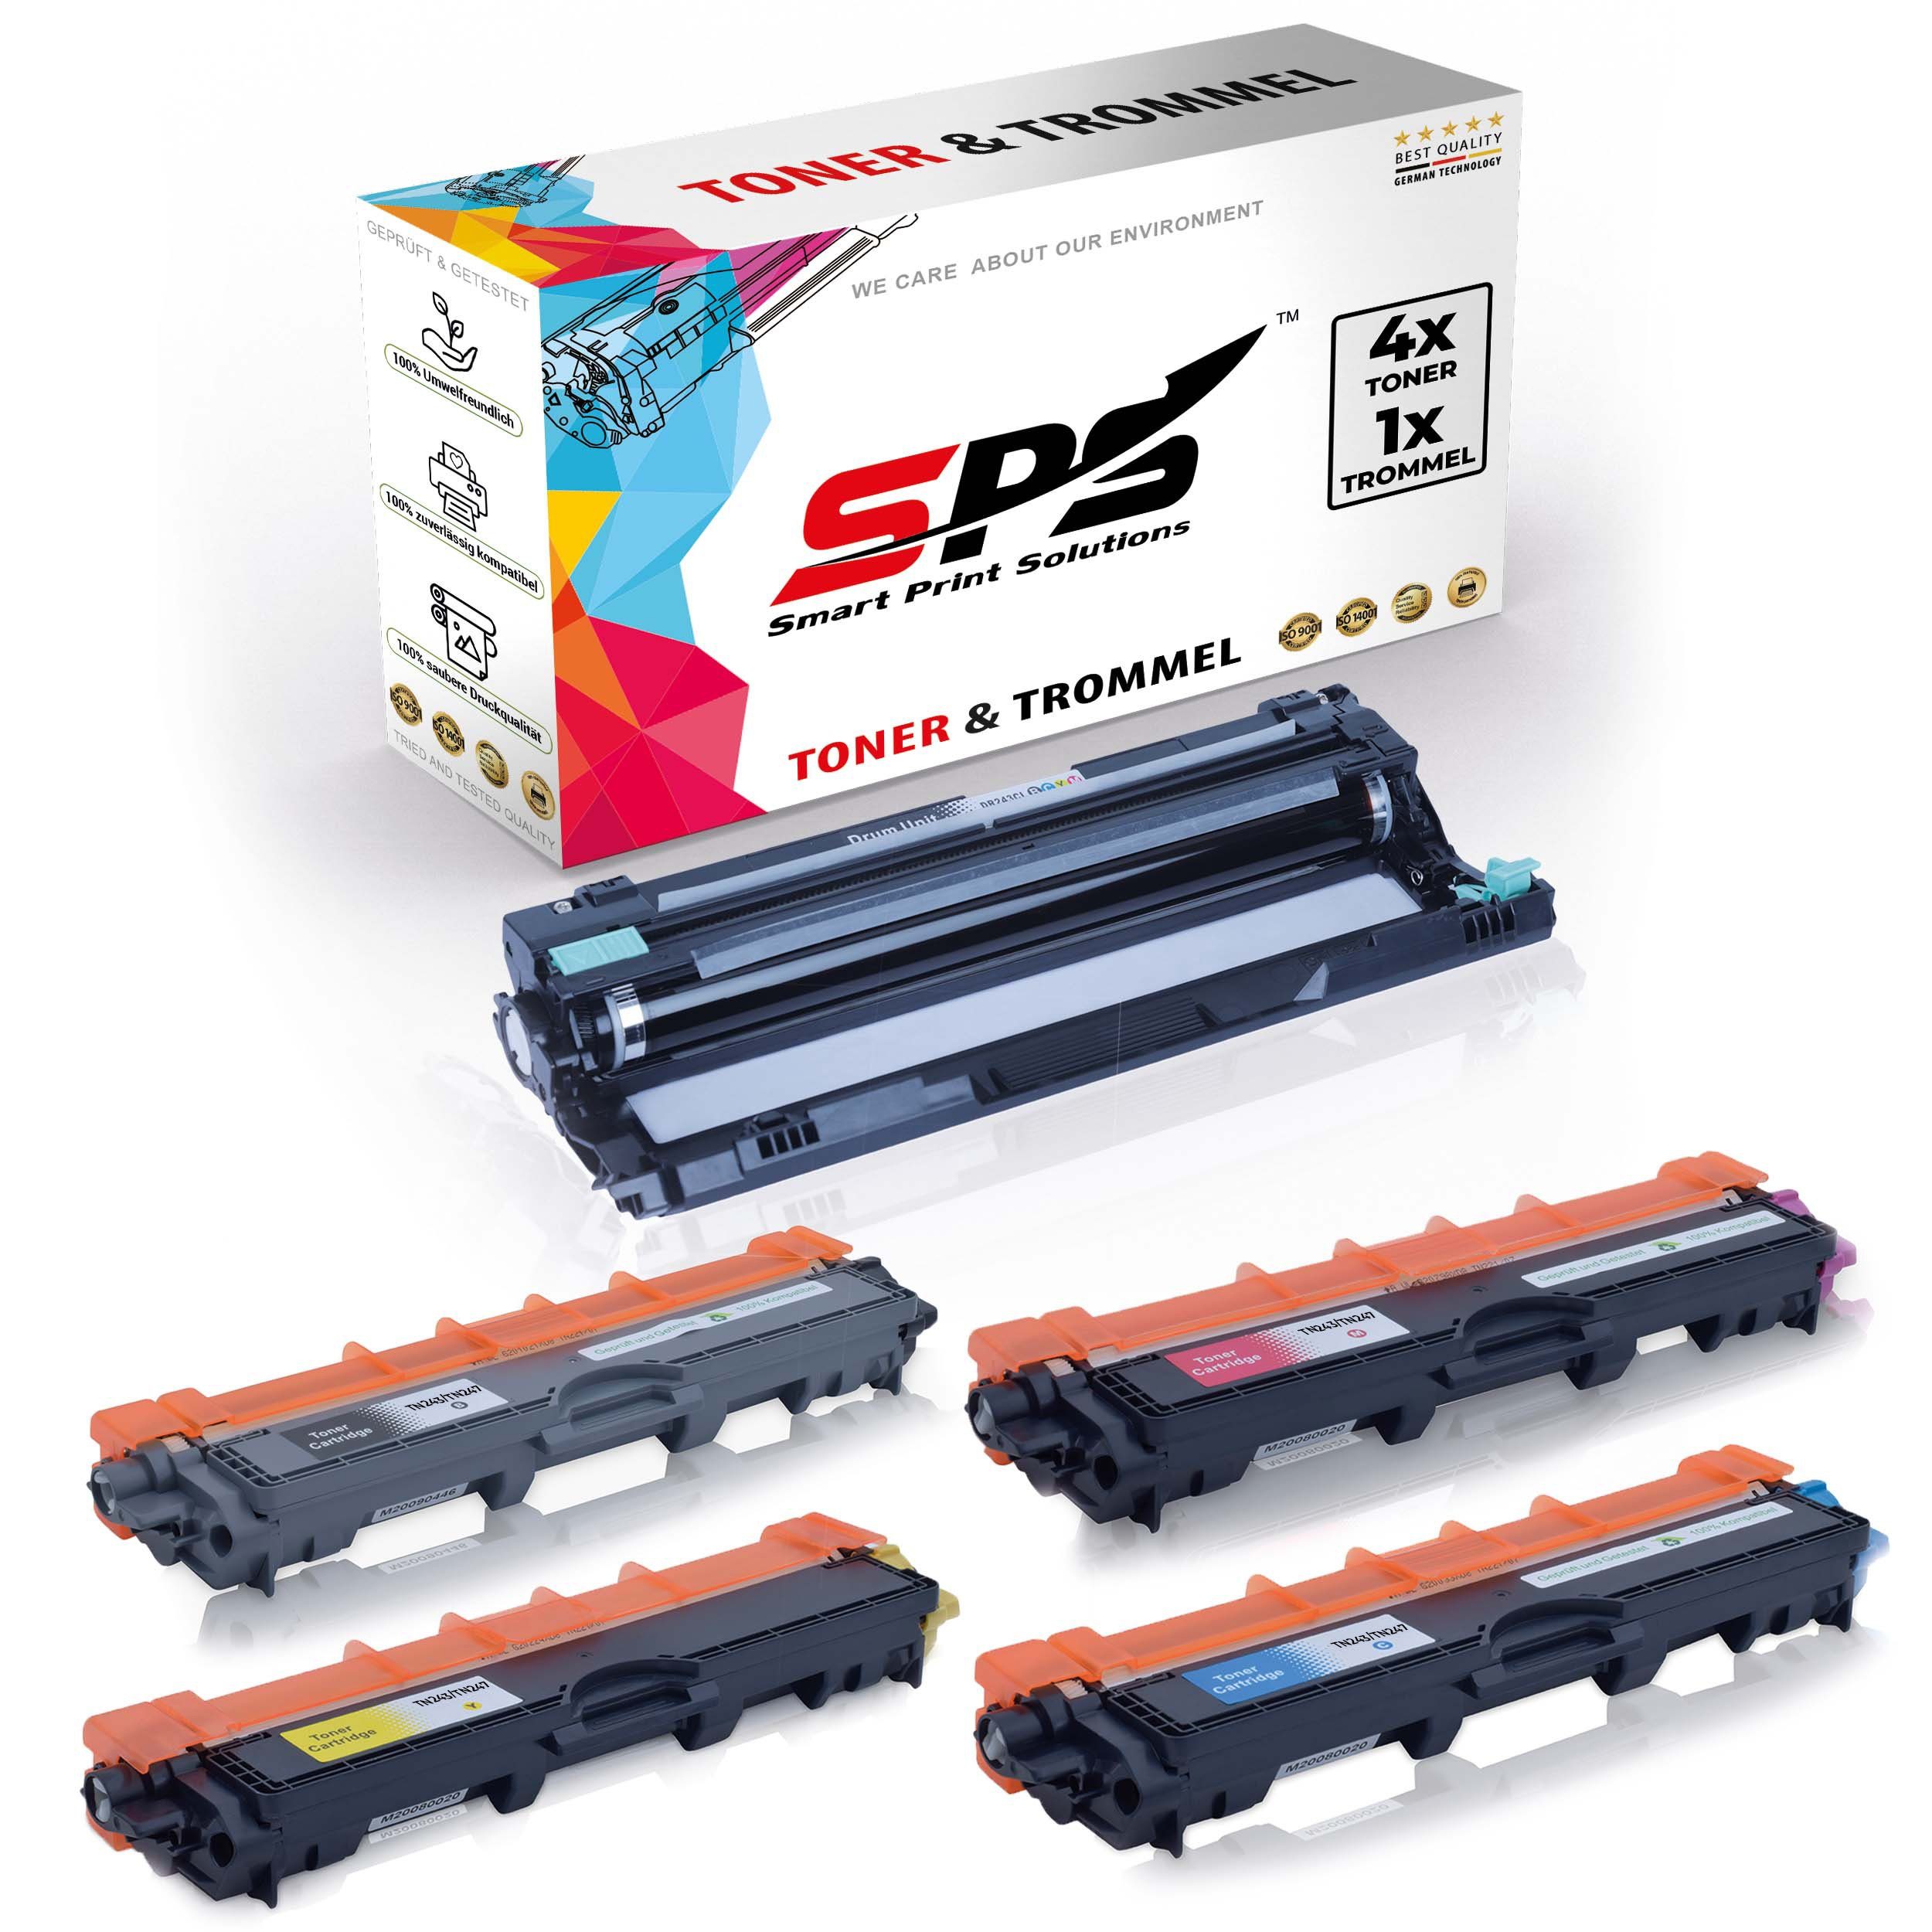 SPS Tonerkartusche Kompatibel für (5er Pack) HL-L3230CDW TN-247, DR-243CL Brother